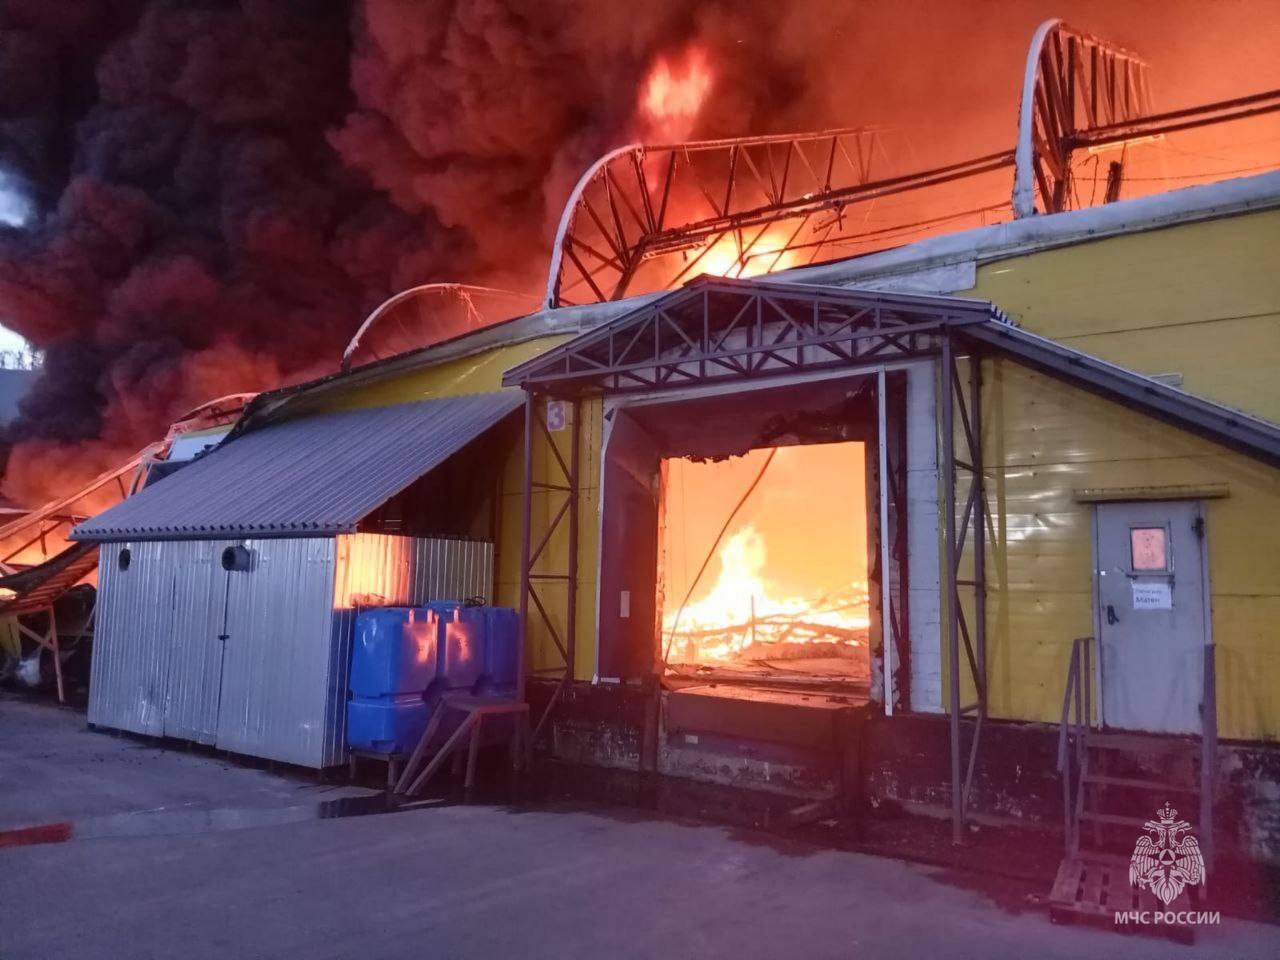 В Подмосковье вспыхнул мощный пожар на складах, валит черный дым. Видео